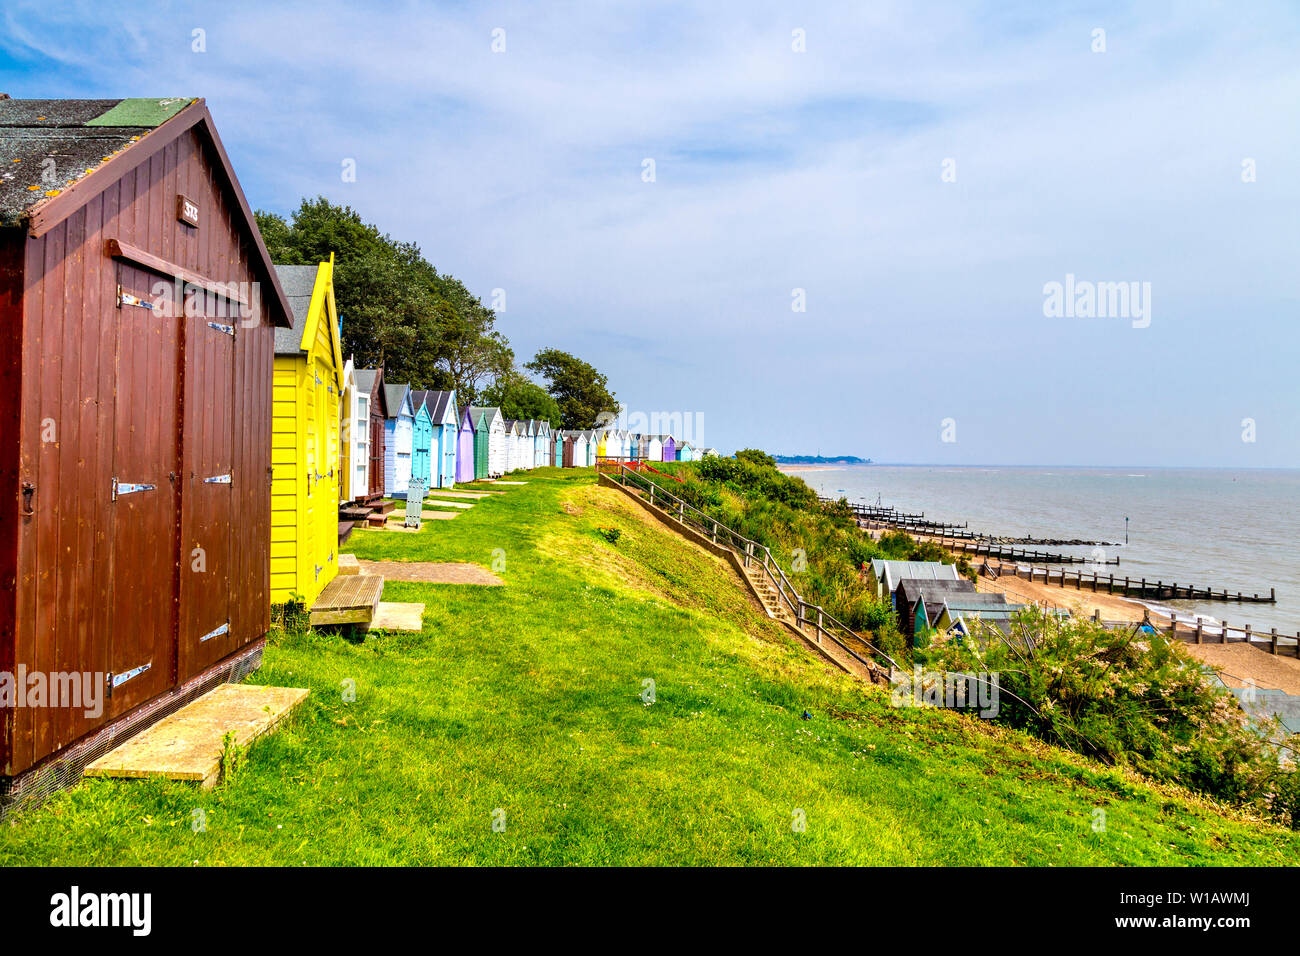 Coloridas casetas de playa a orillas del mar playa de Felixstowe, Suffolk, Reino Unido Foto de stock